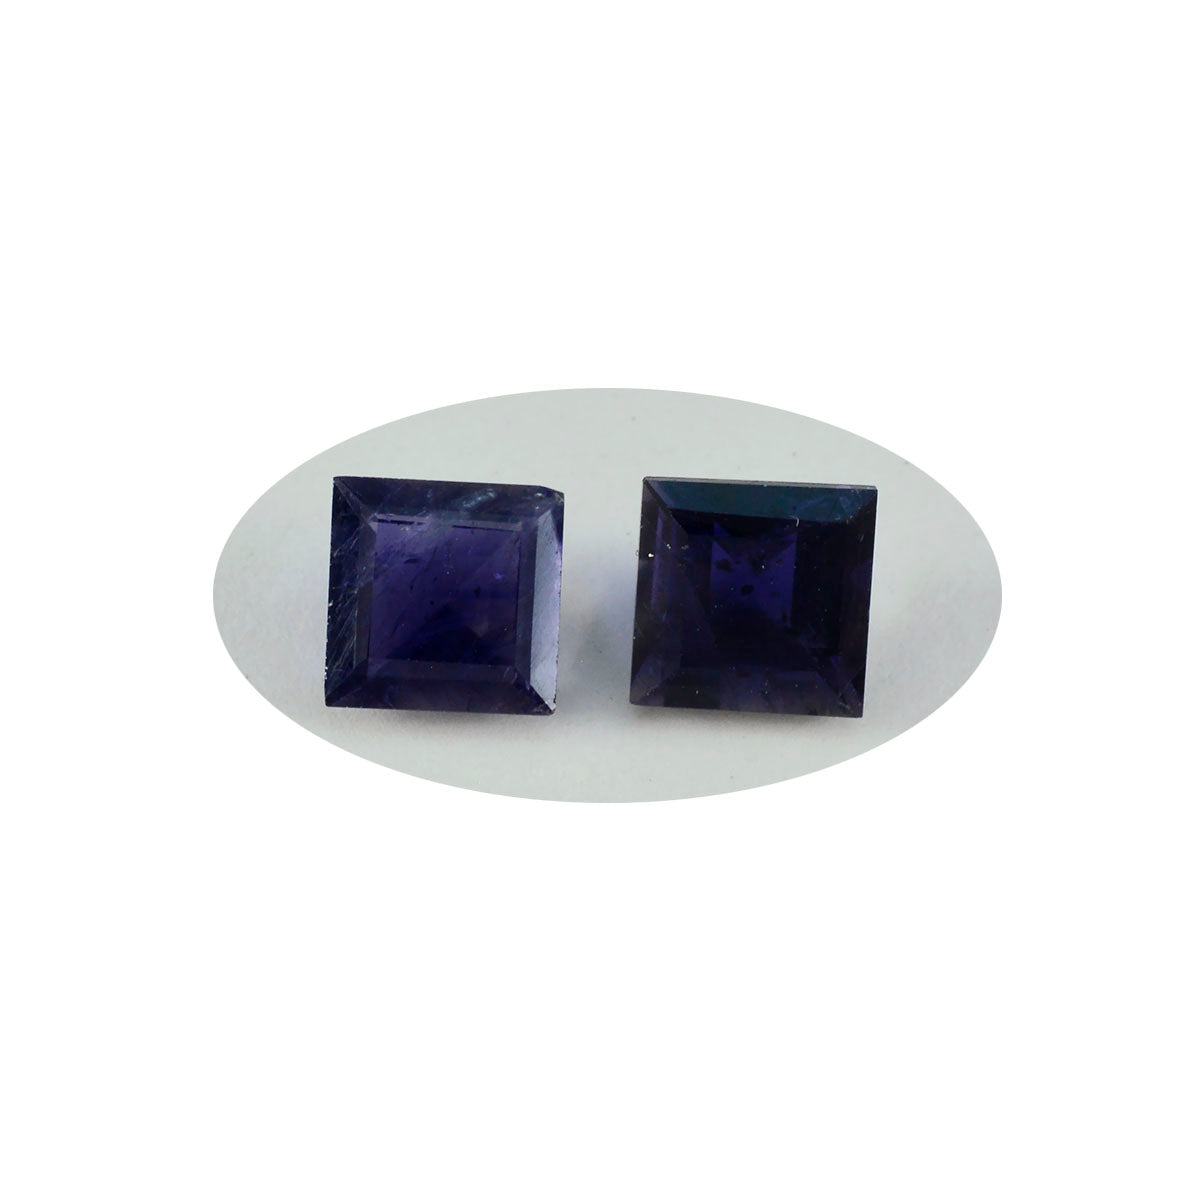 riyogems 1шт синий иолит ограненный 13x13 мм квадратной формы привлекательные качественные драгоценные камни